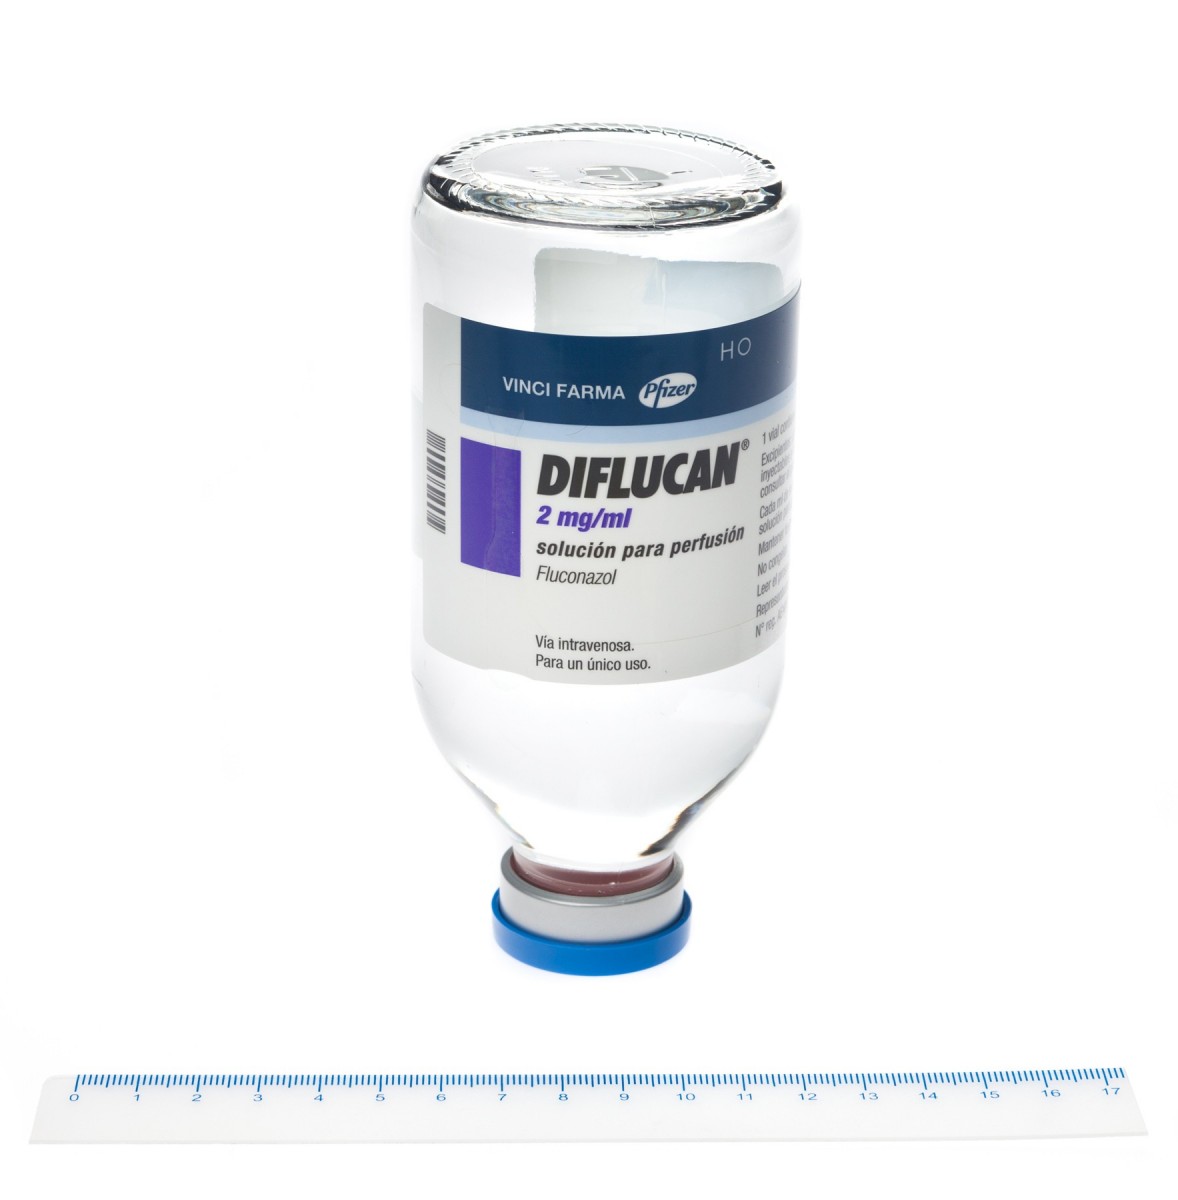 DIFLUCAN 2 mg/ml SOLUCION PARA PERFUSION ,  50 viales de 50 ml fotografía de la forma farmacéutica.